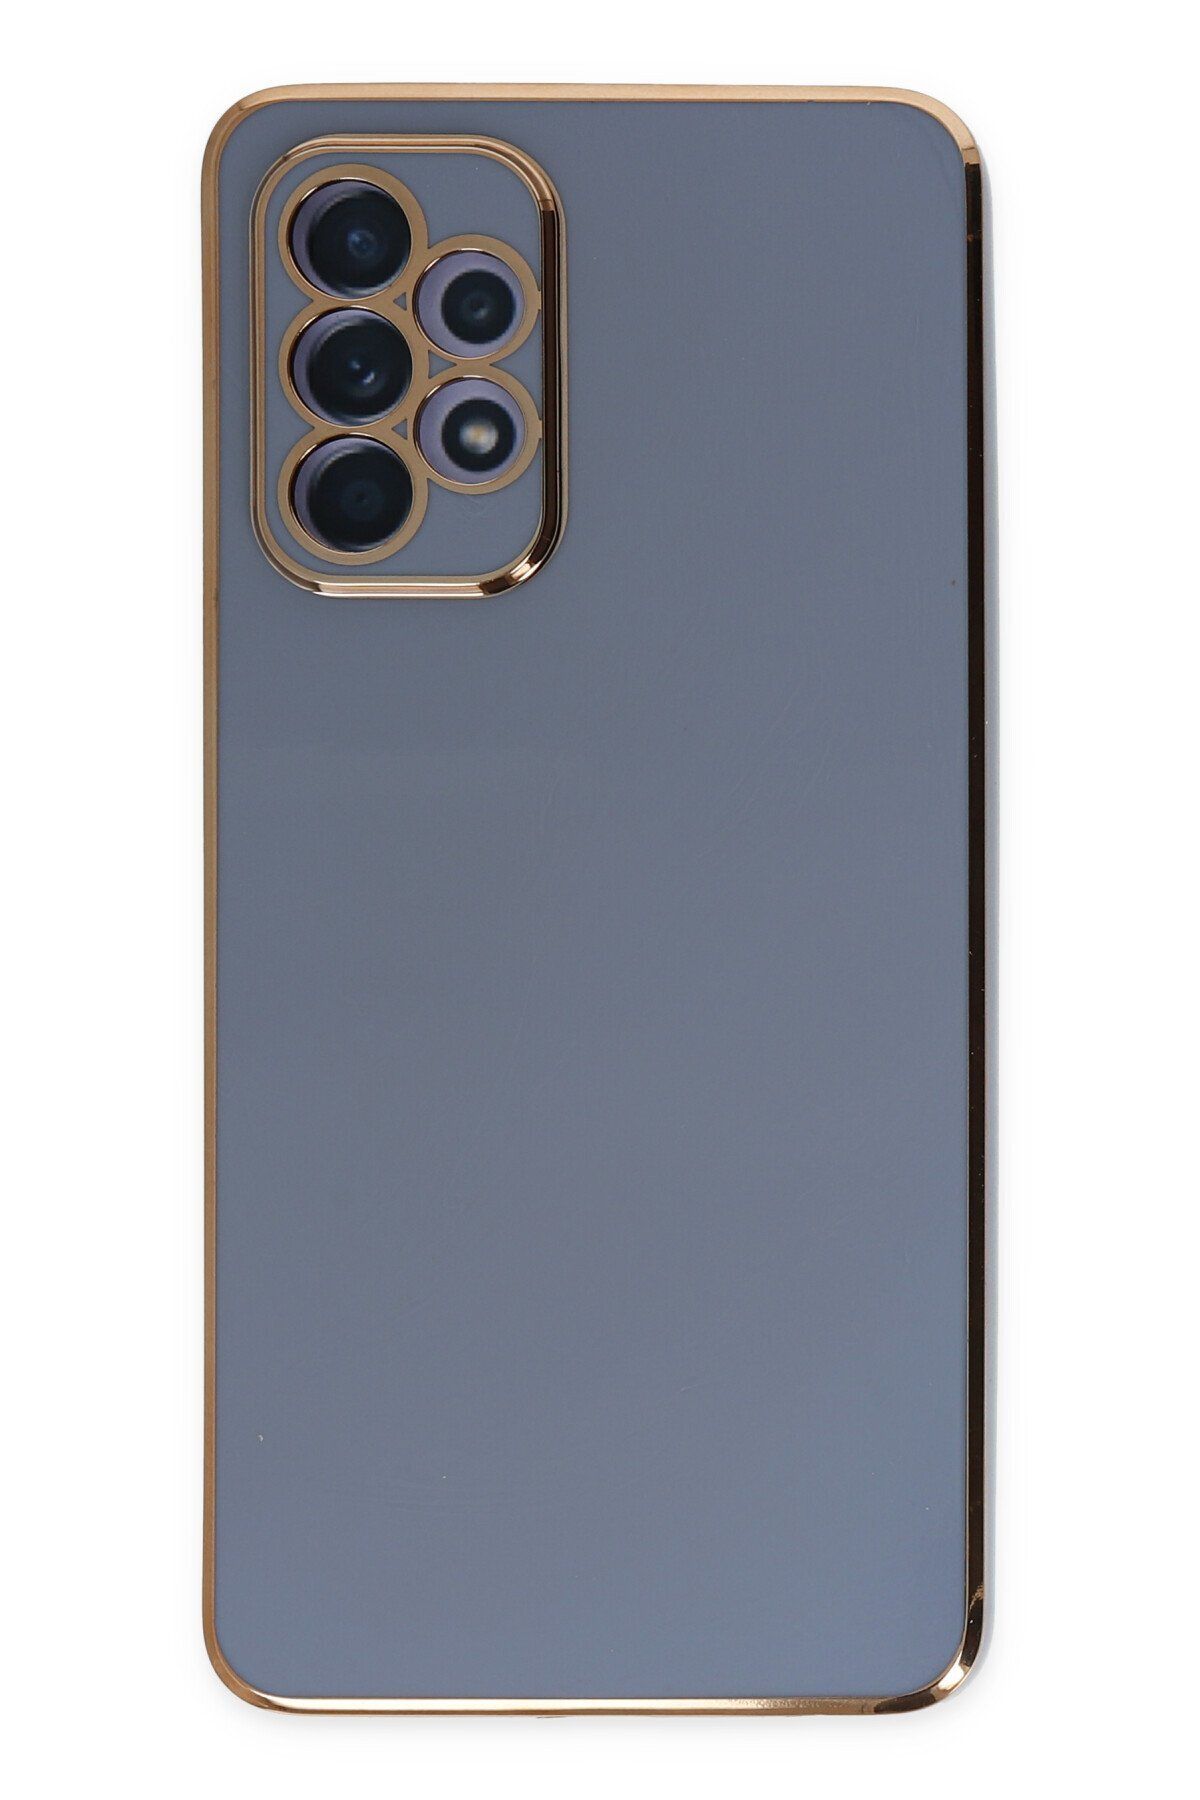 AQUA AKSESUAR Samsung Galaxy A32 Uyumlu Parlak Altın Kenarlı Kamera Korumalı Dayanıklı Kılıf - Mavi